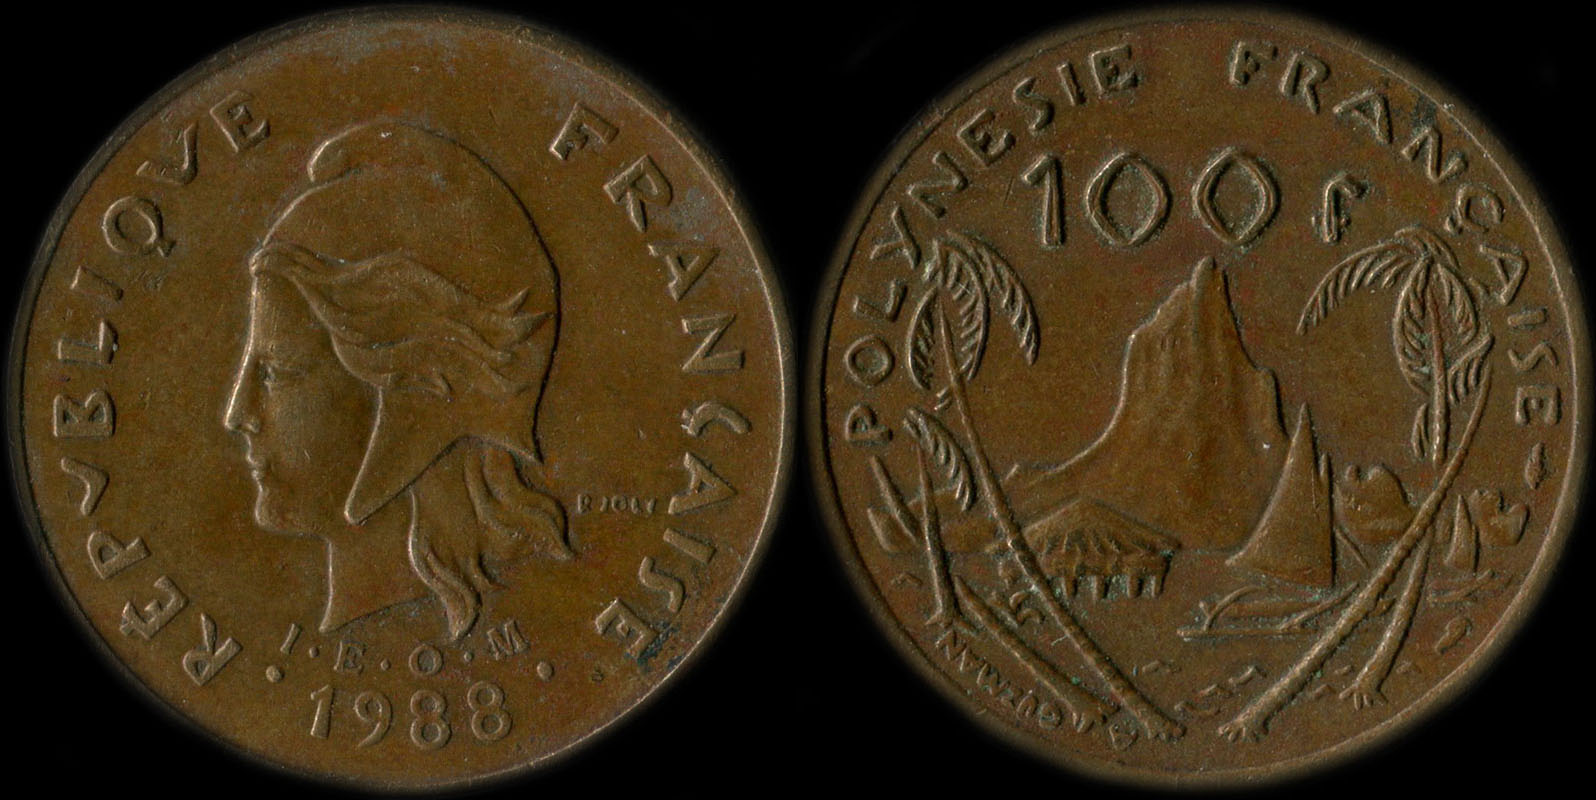 Pice de 100 francs 1988 - I.E.O.M. Polynsie franaise